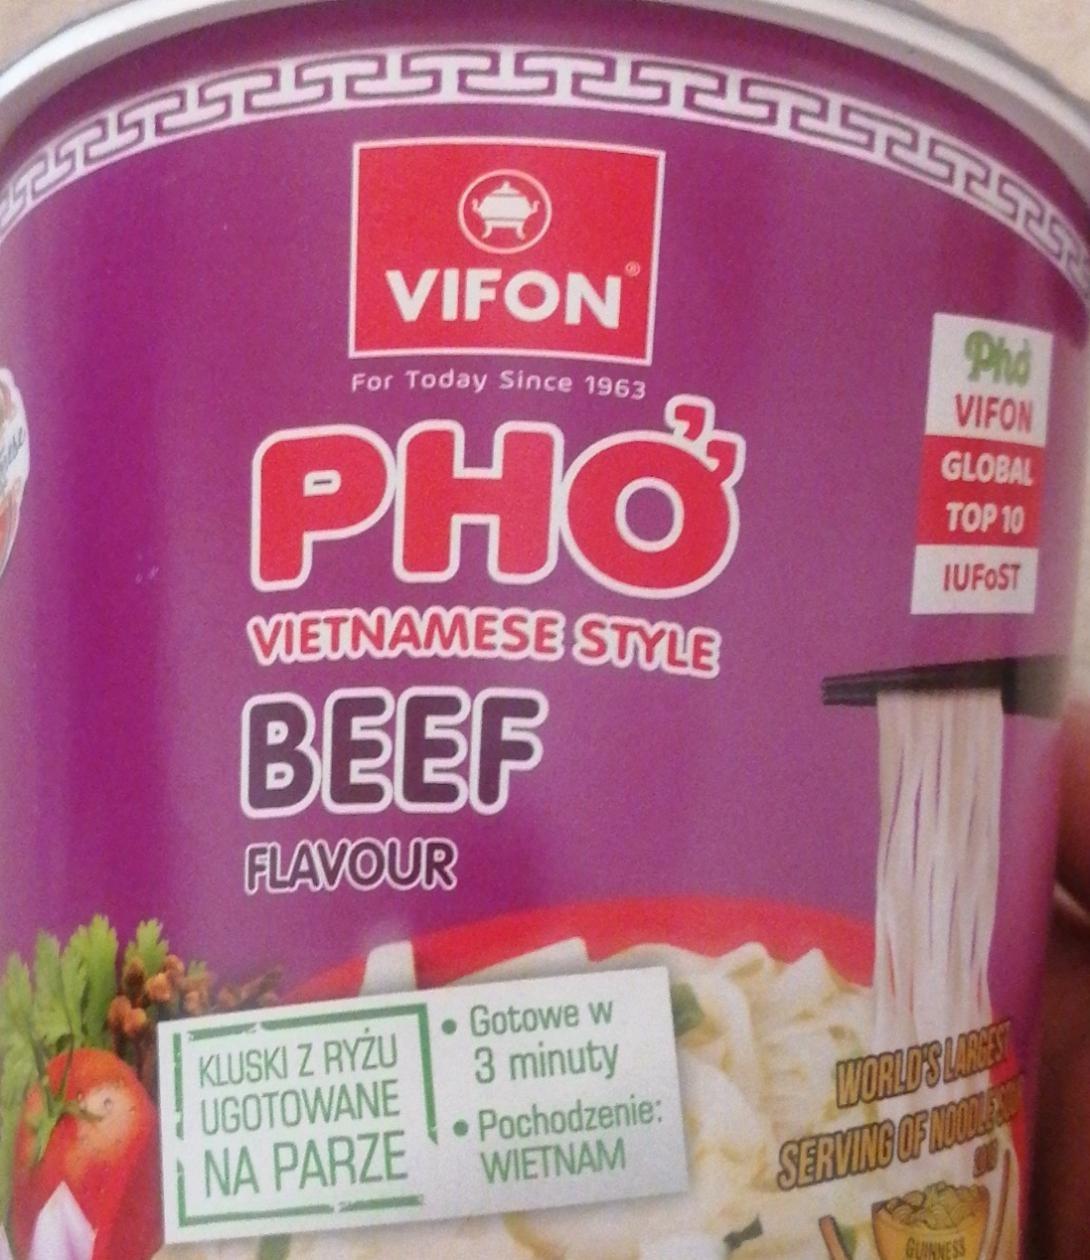 Фото - В'єтнамський суп Pho зі смаком яловичини Vifon